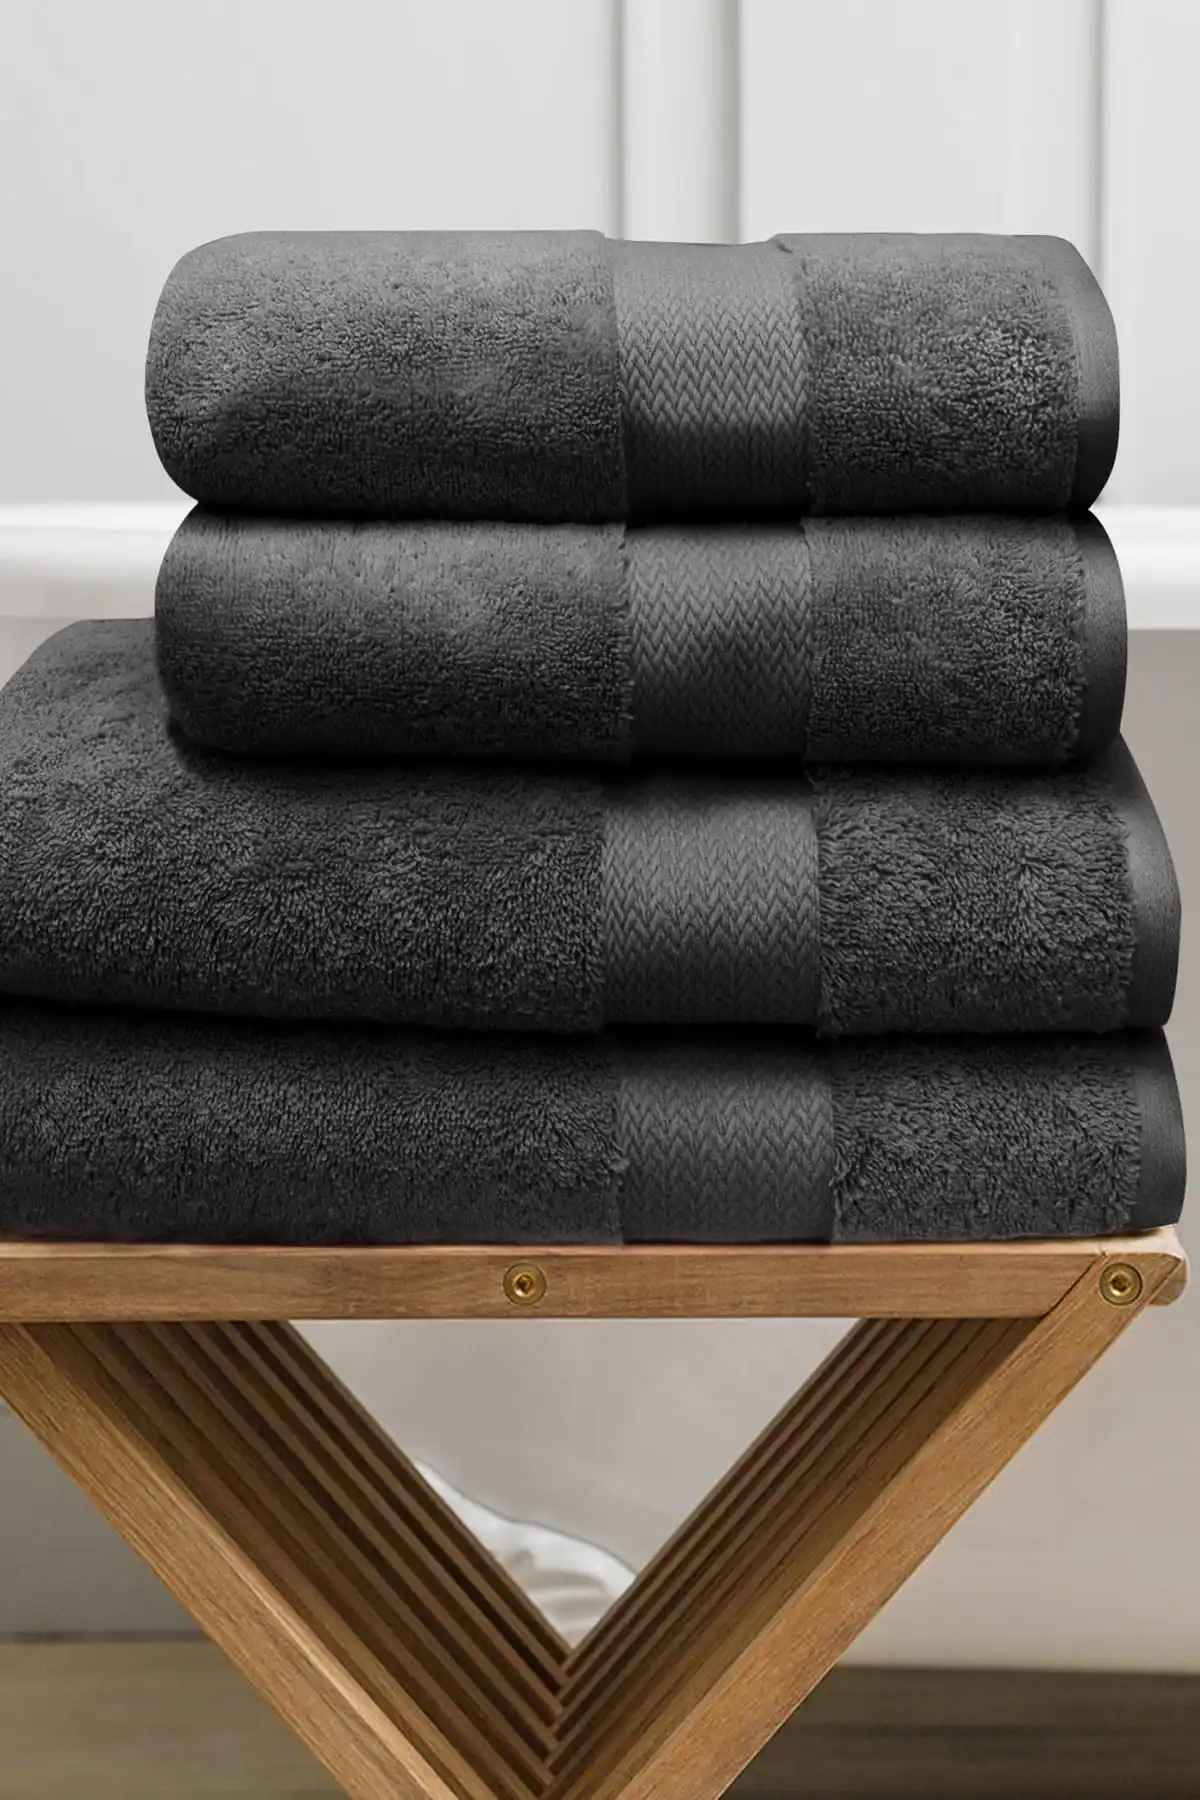 juego-de-toallas-de-4-piezas-algodon-negro-suave-y-absorbente